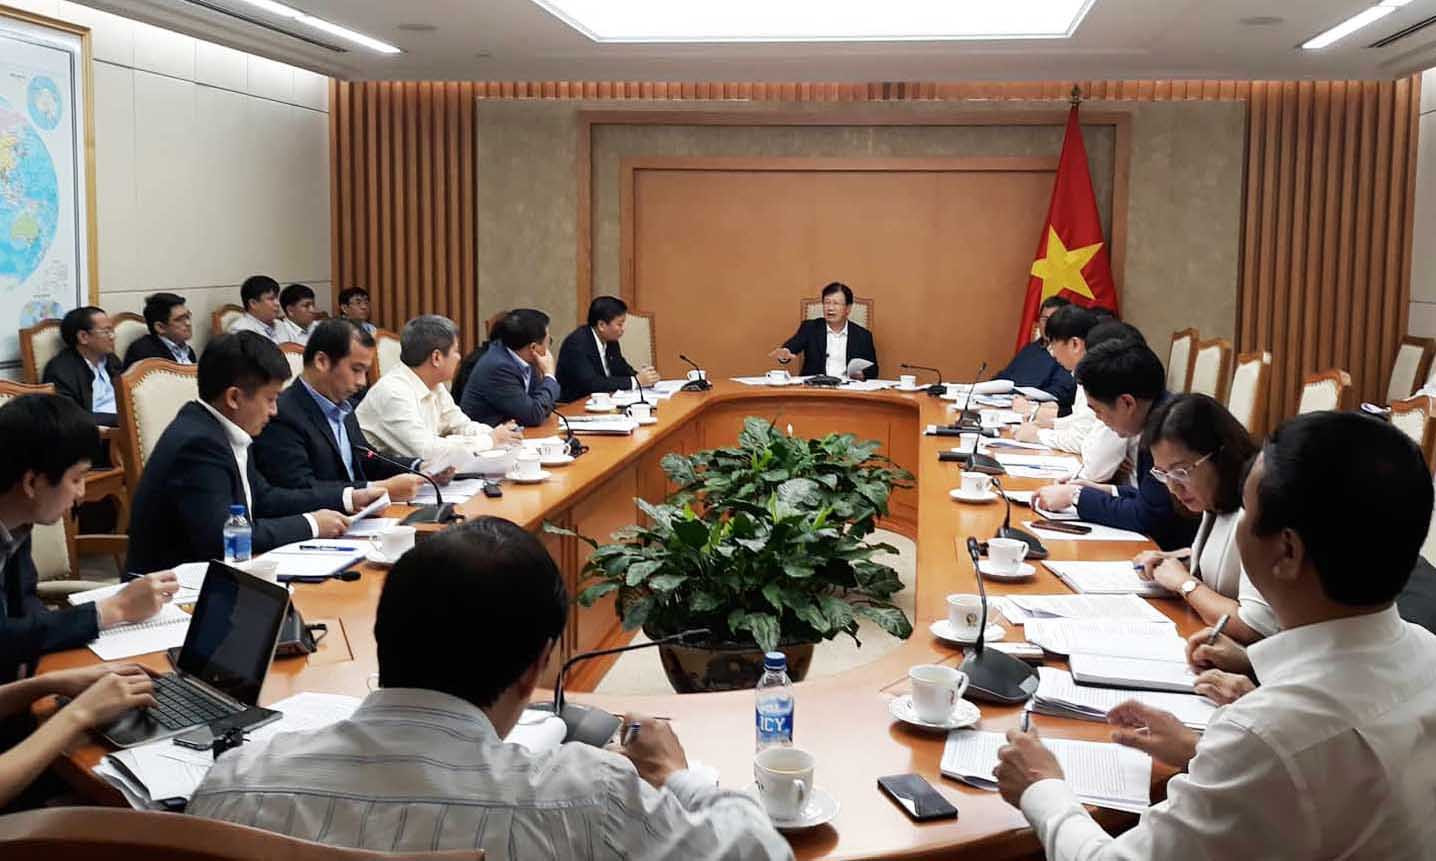 Phó Thủ tướng Trịnh Đình Dũng chỉ đạo khẩn trương giải quyết dứt điểm hệ lụy phát sinh sau các trận lũ năm 2018 ở Nghệ An. Ảnh tư liệu: PV